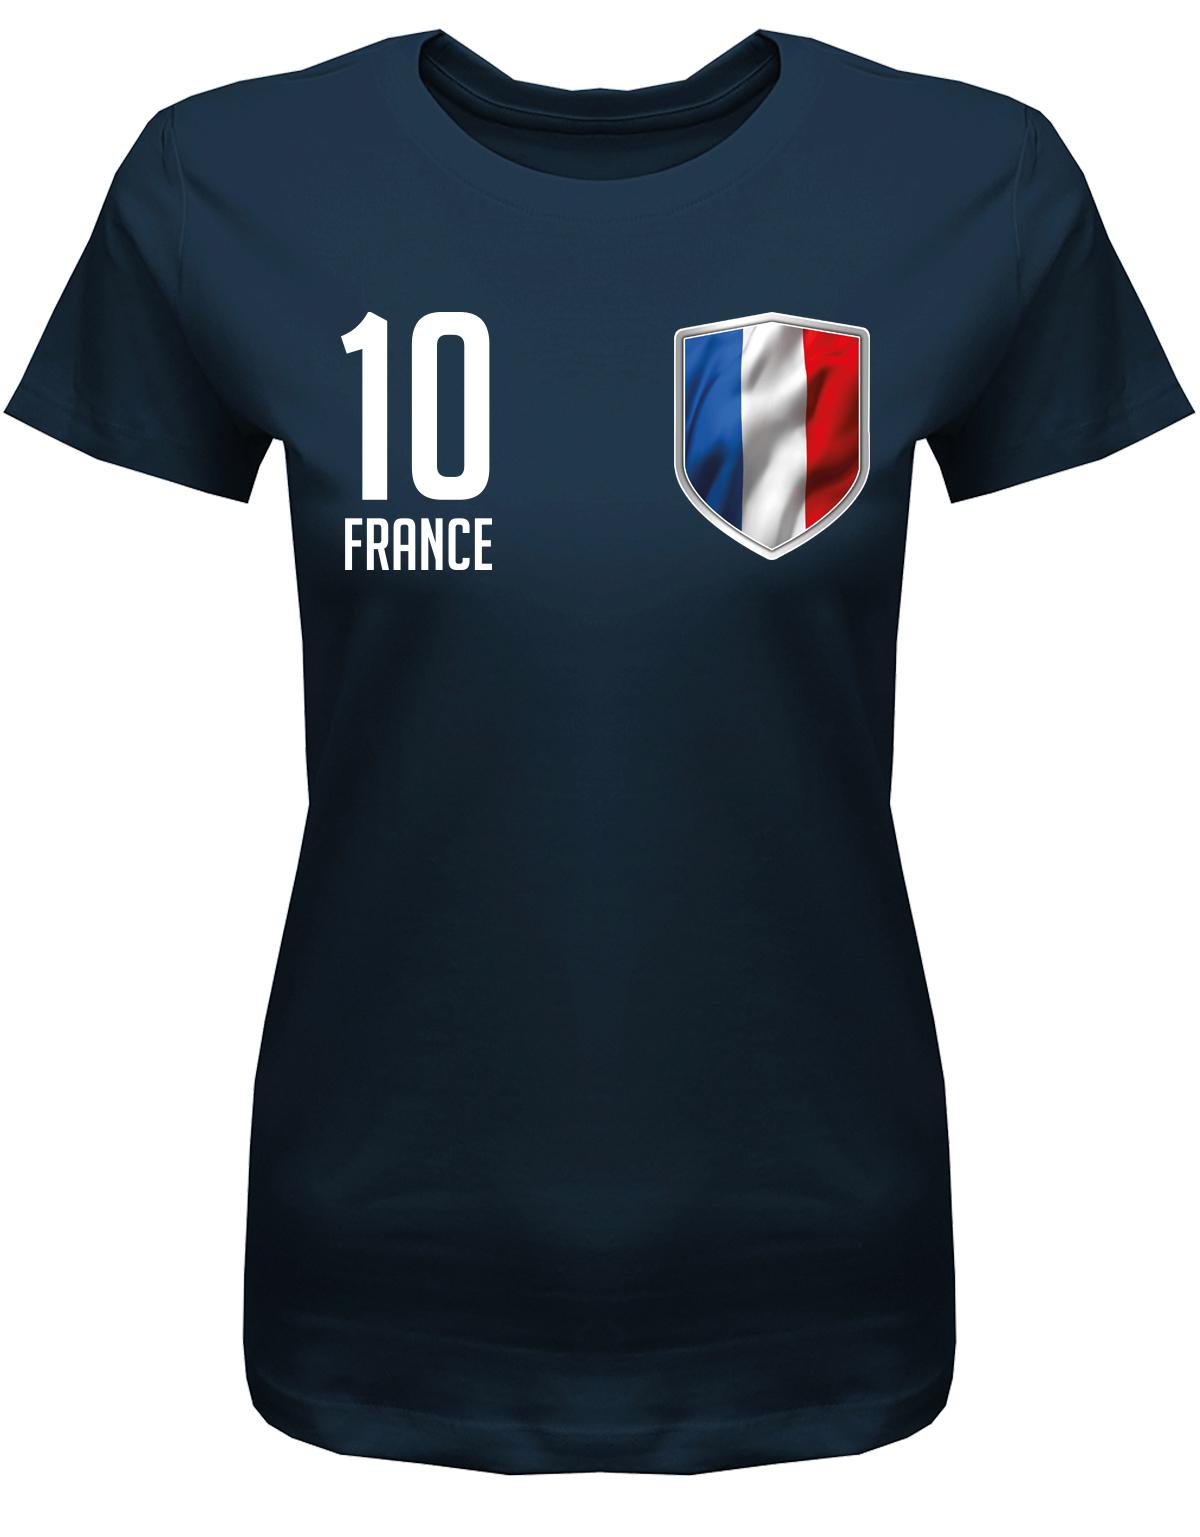 France-10-Damen-Shirt-Navy